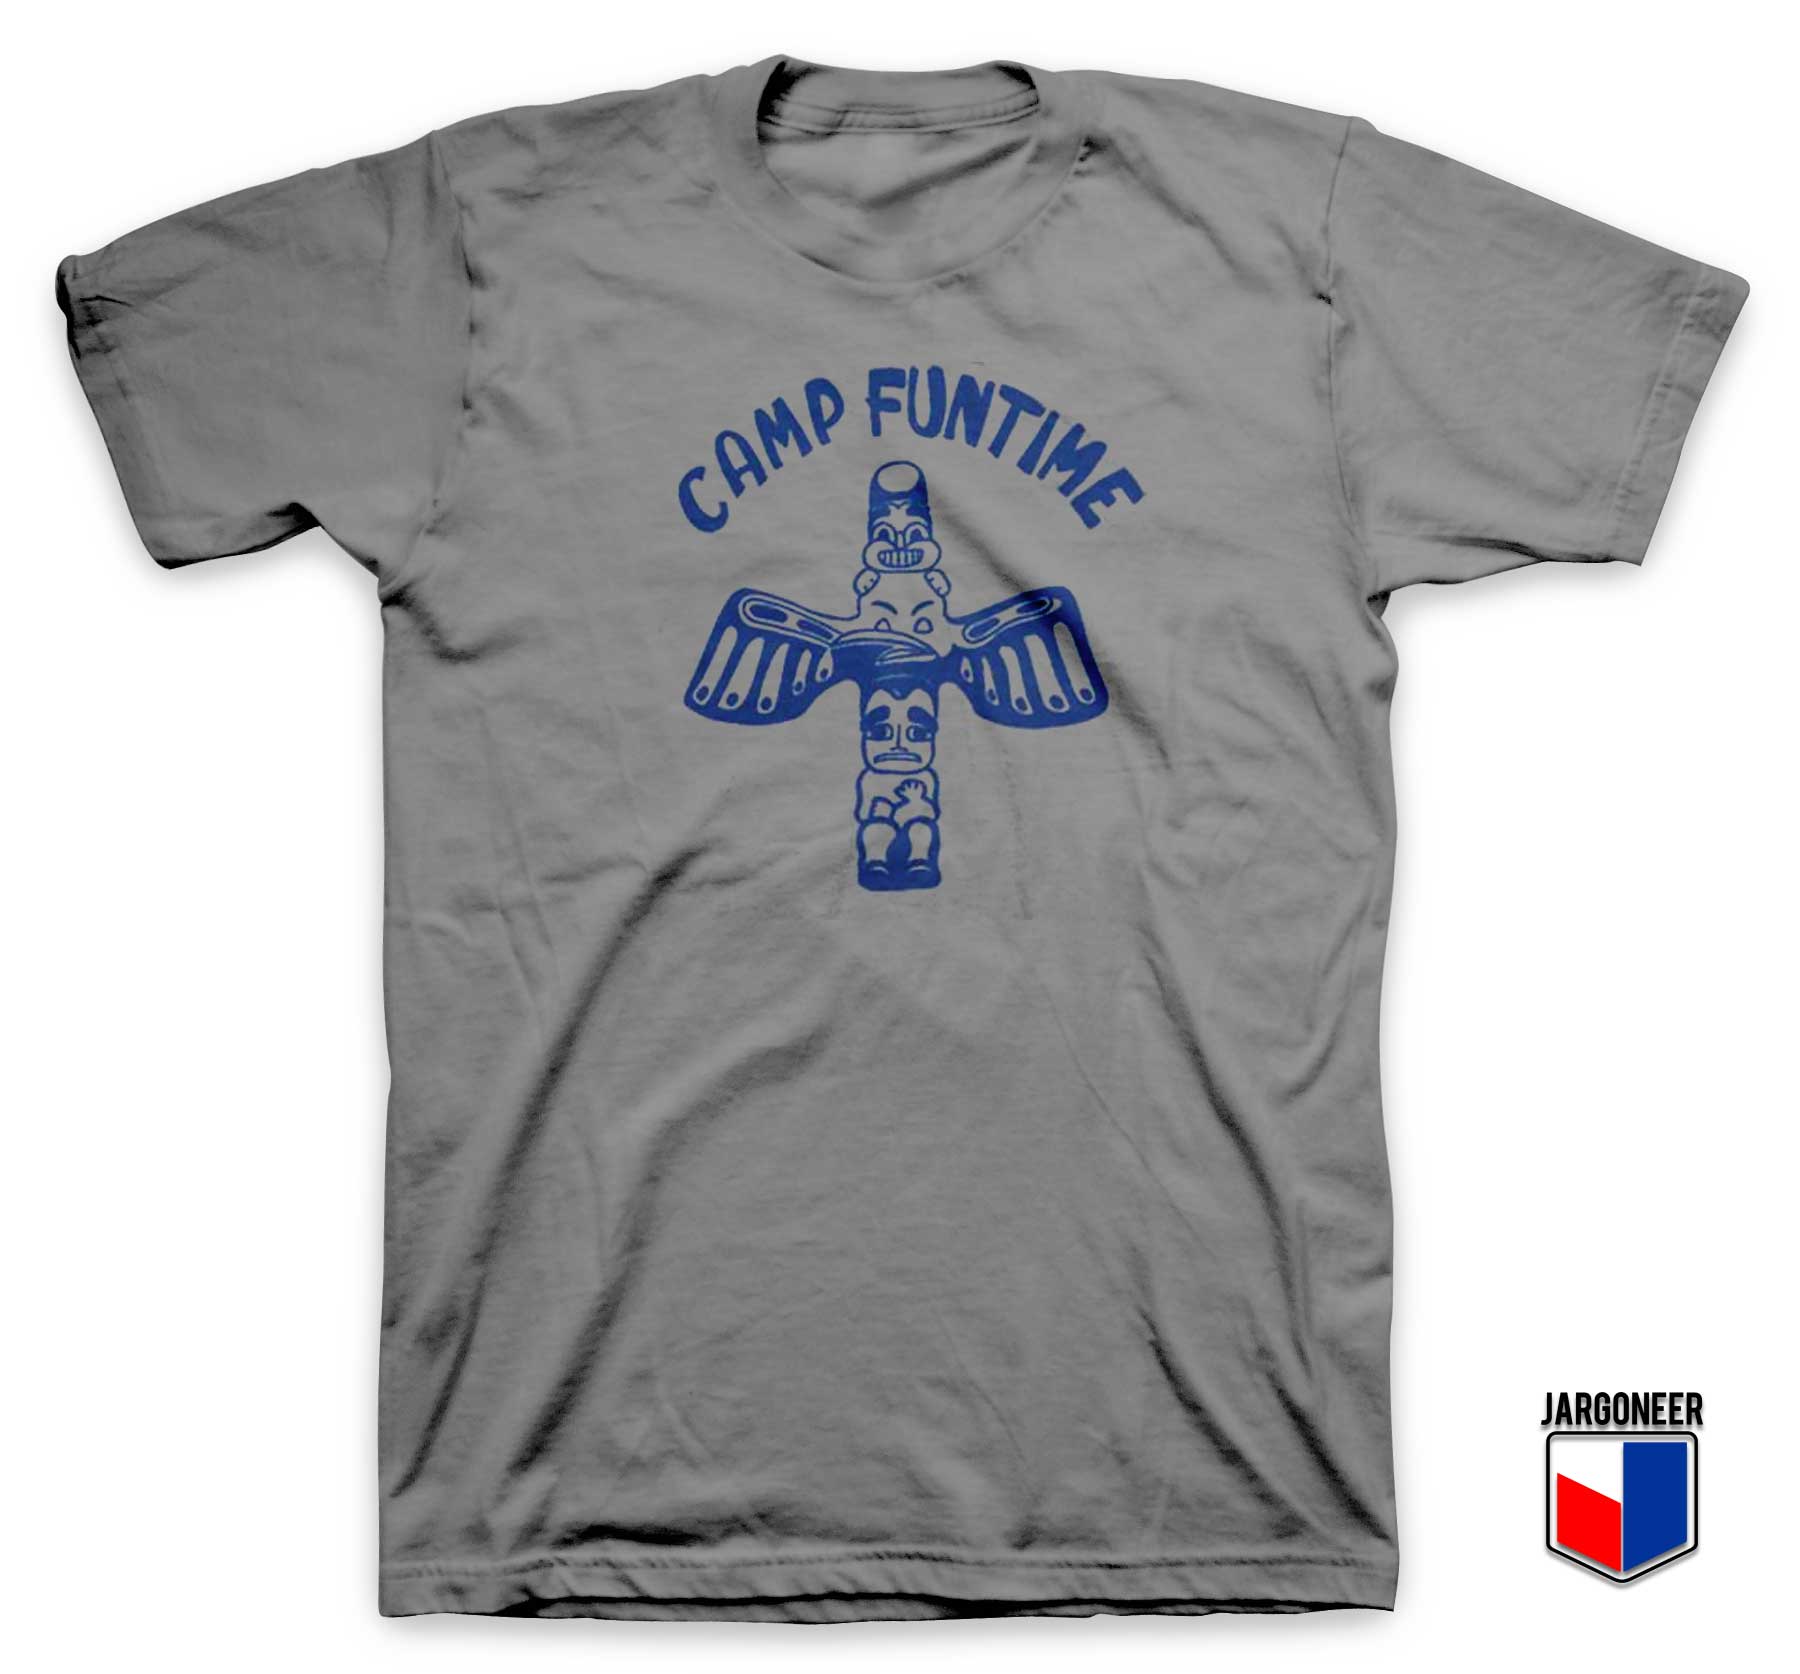 Camp Funtime T Shirt - Shop Unique Graphic Cool Shirt Designs